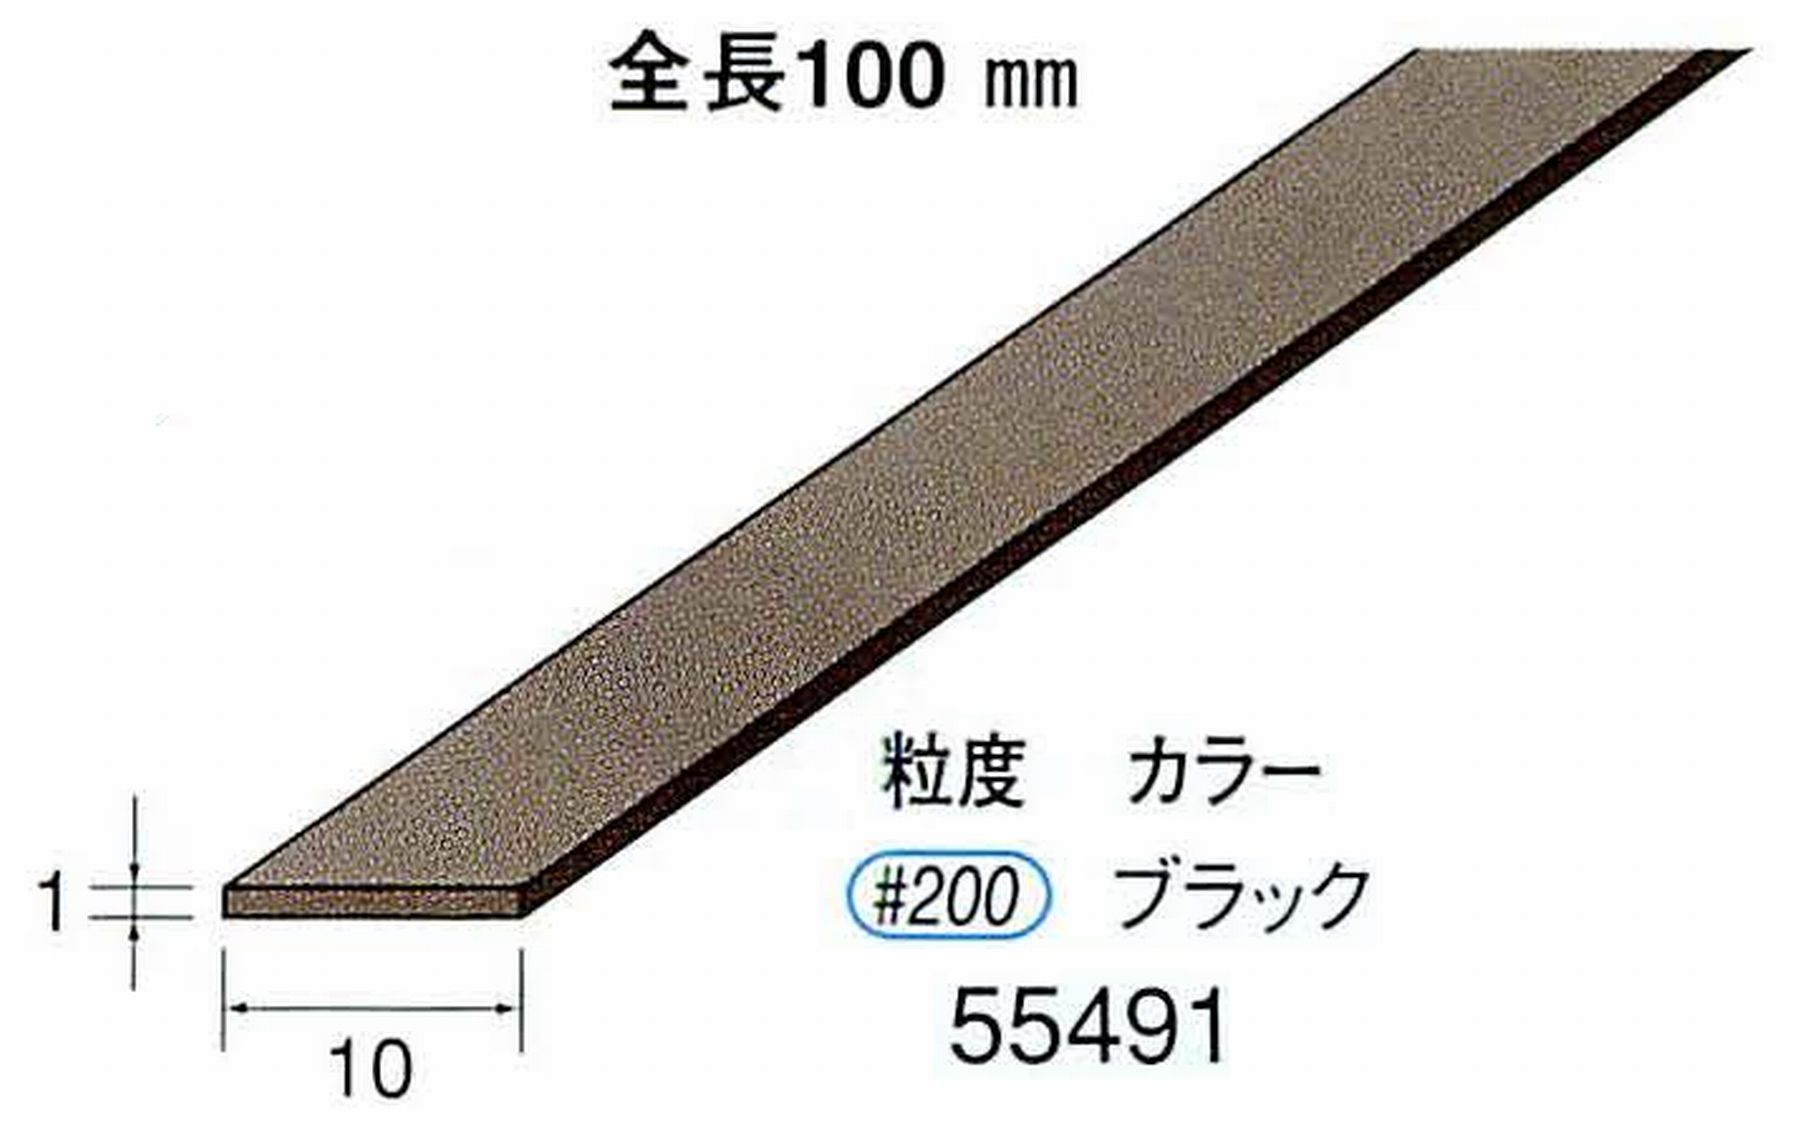 ナカニシ/NAKANISHI ダイヤモンドセラファイバー砥石 全長100mm ブラック 55491